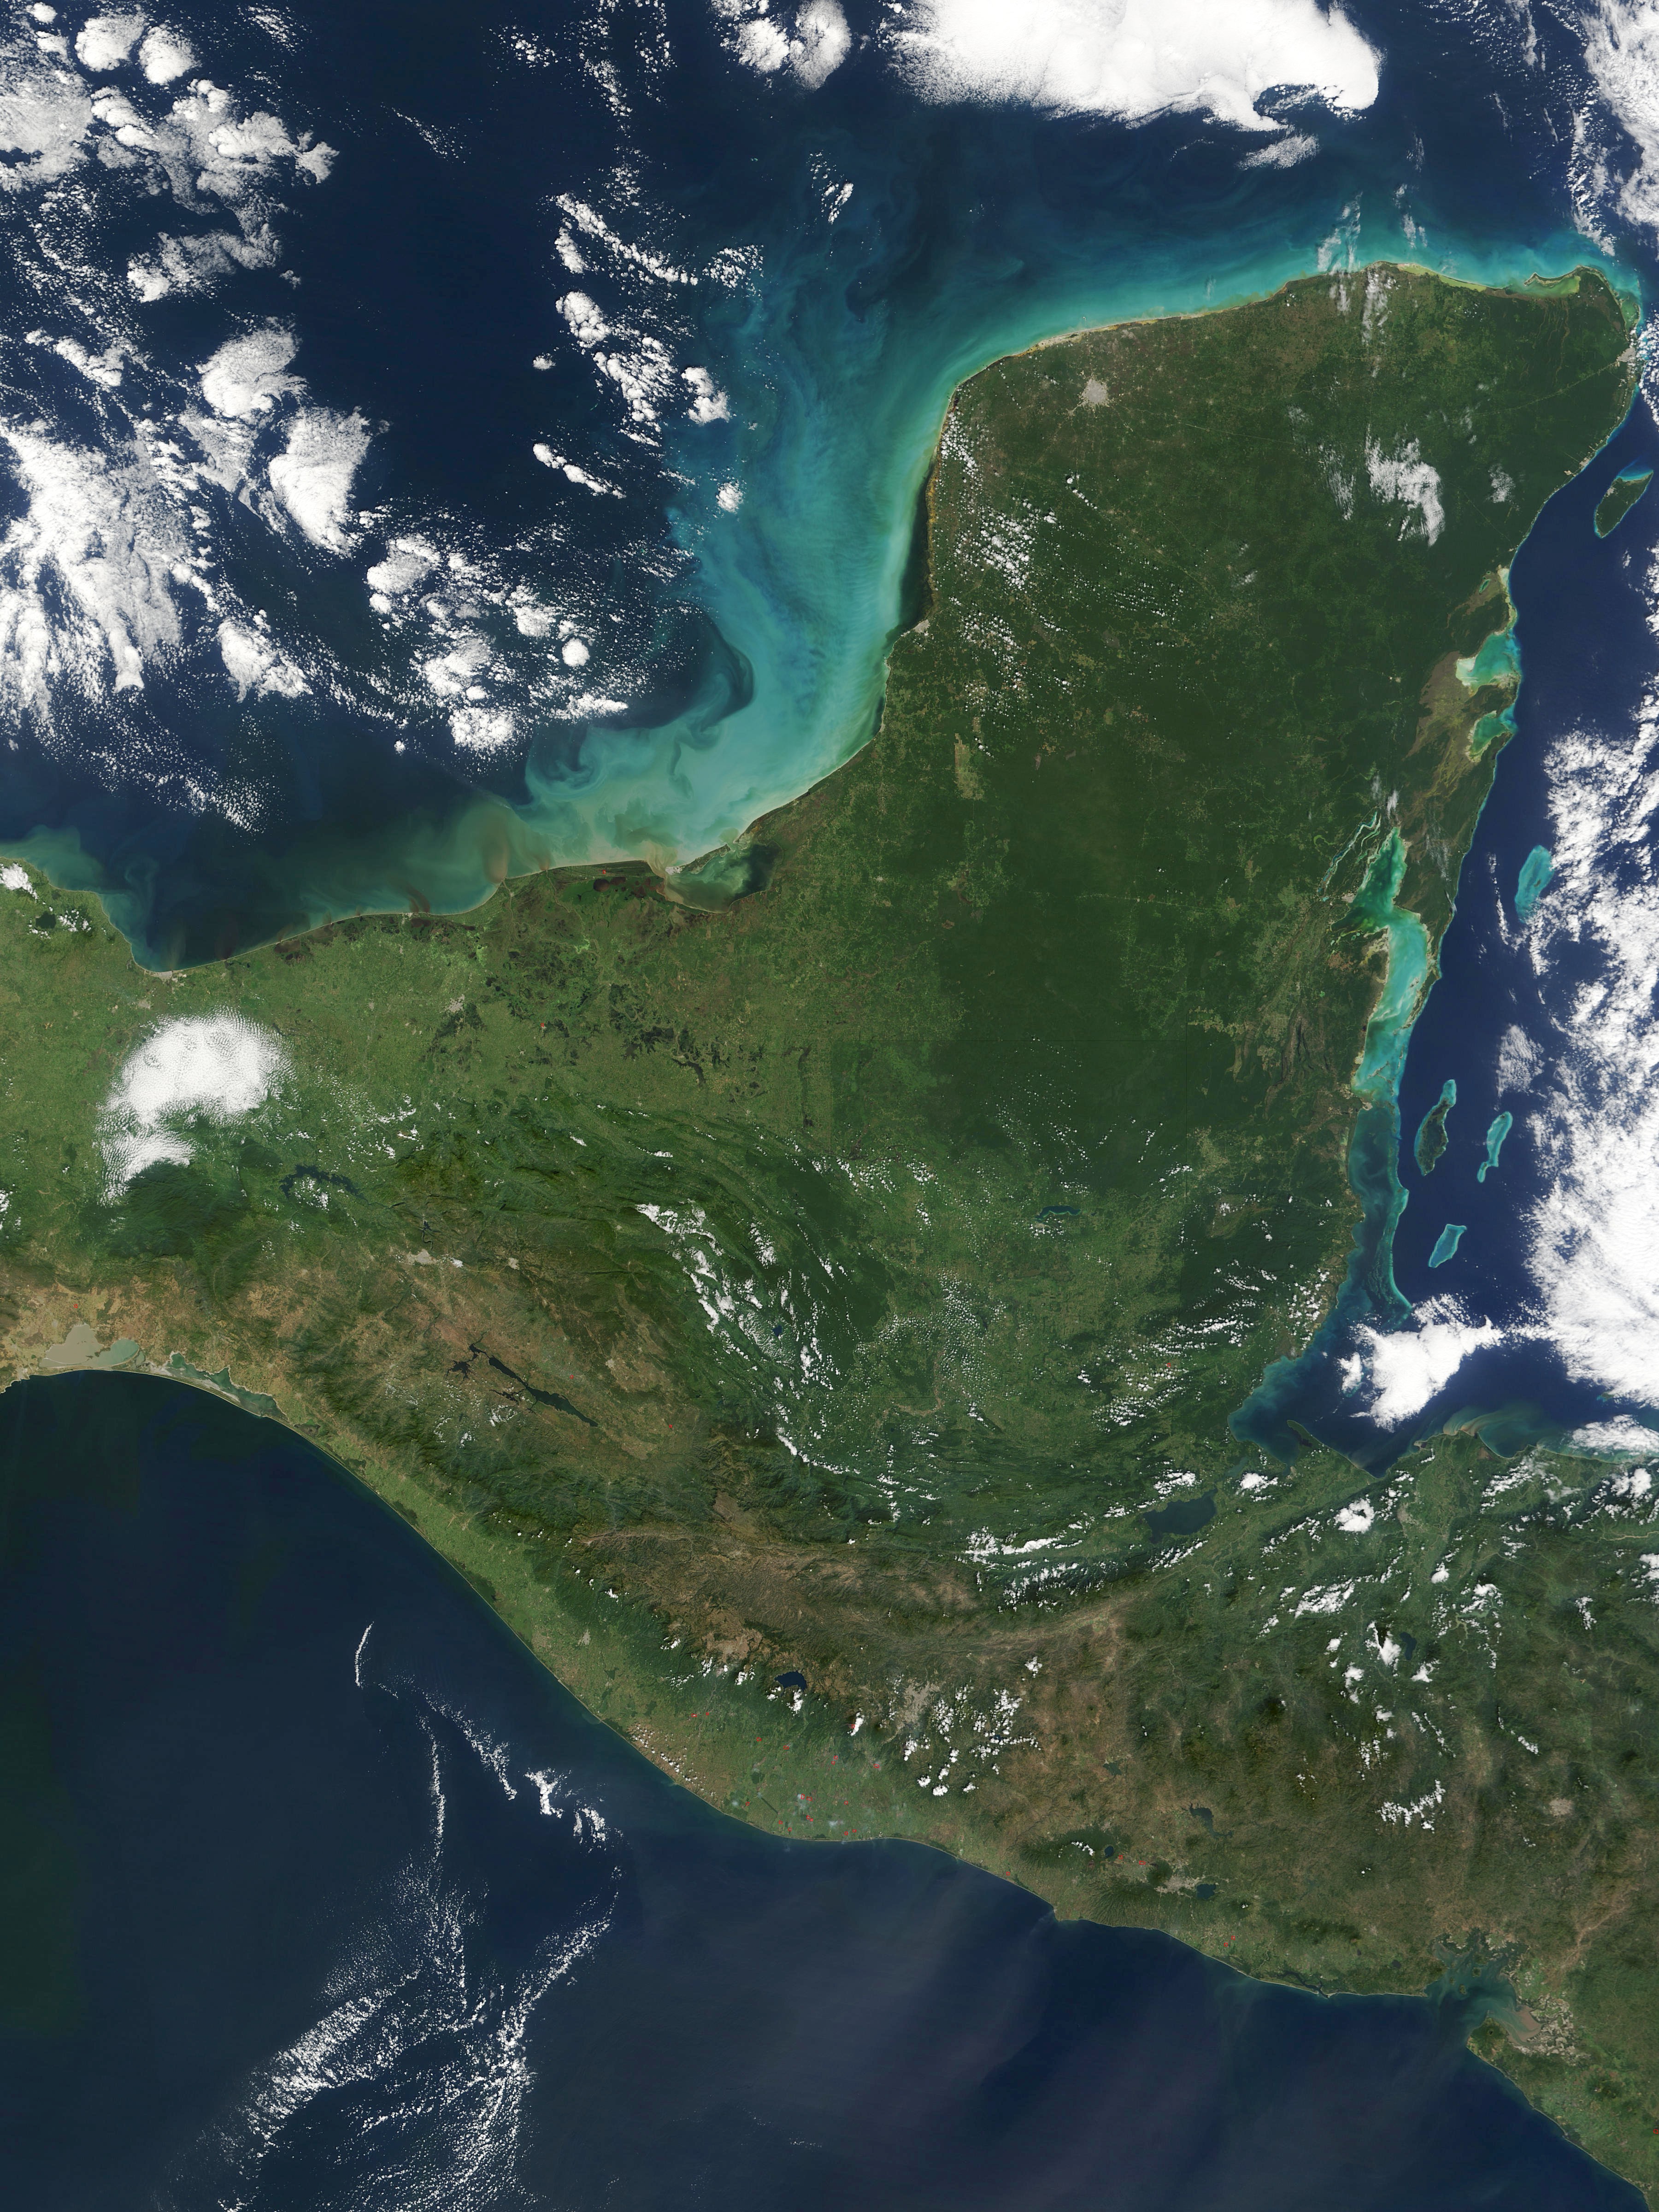 Image:Yucatan peninsula